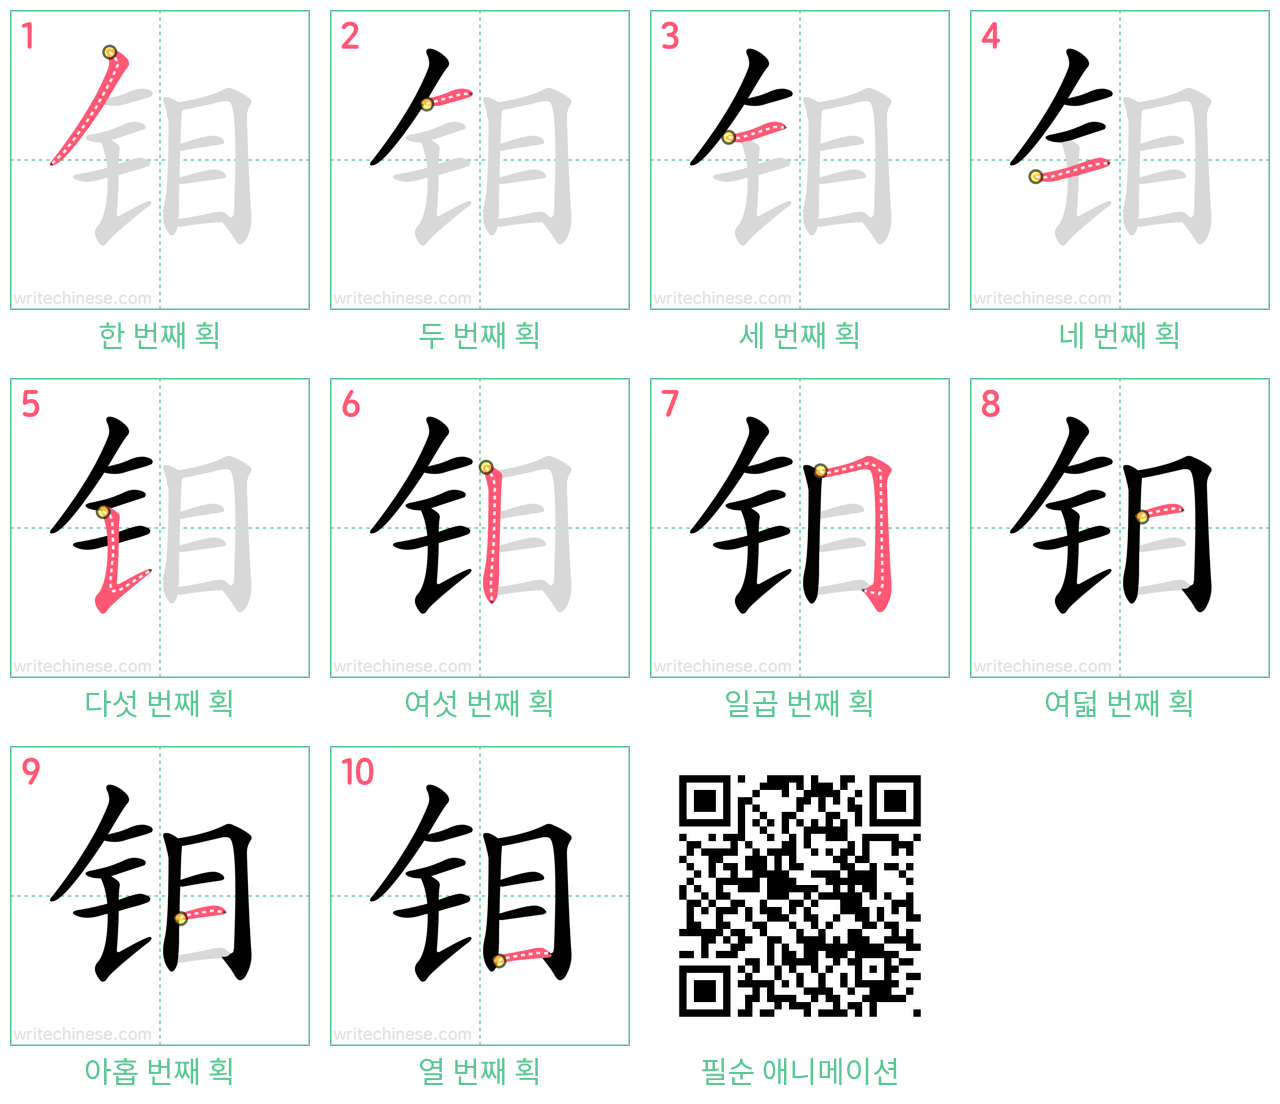 钼 step-by-step stroke order diagrams